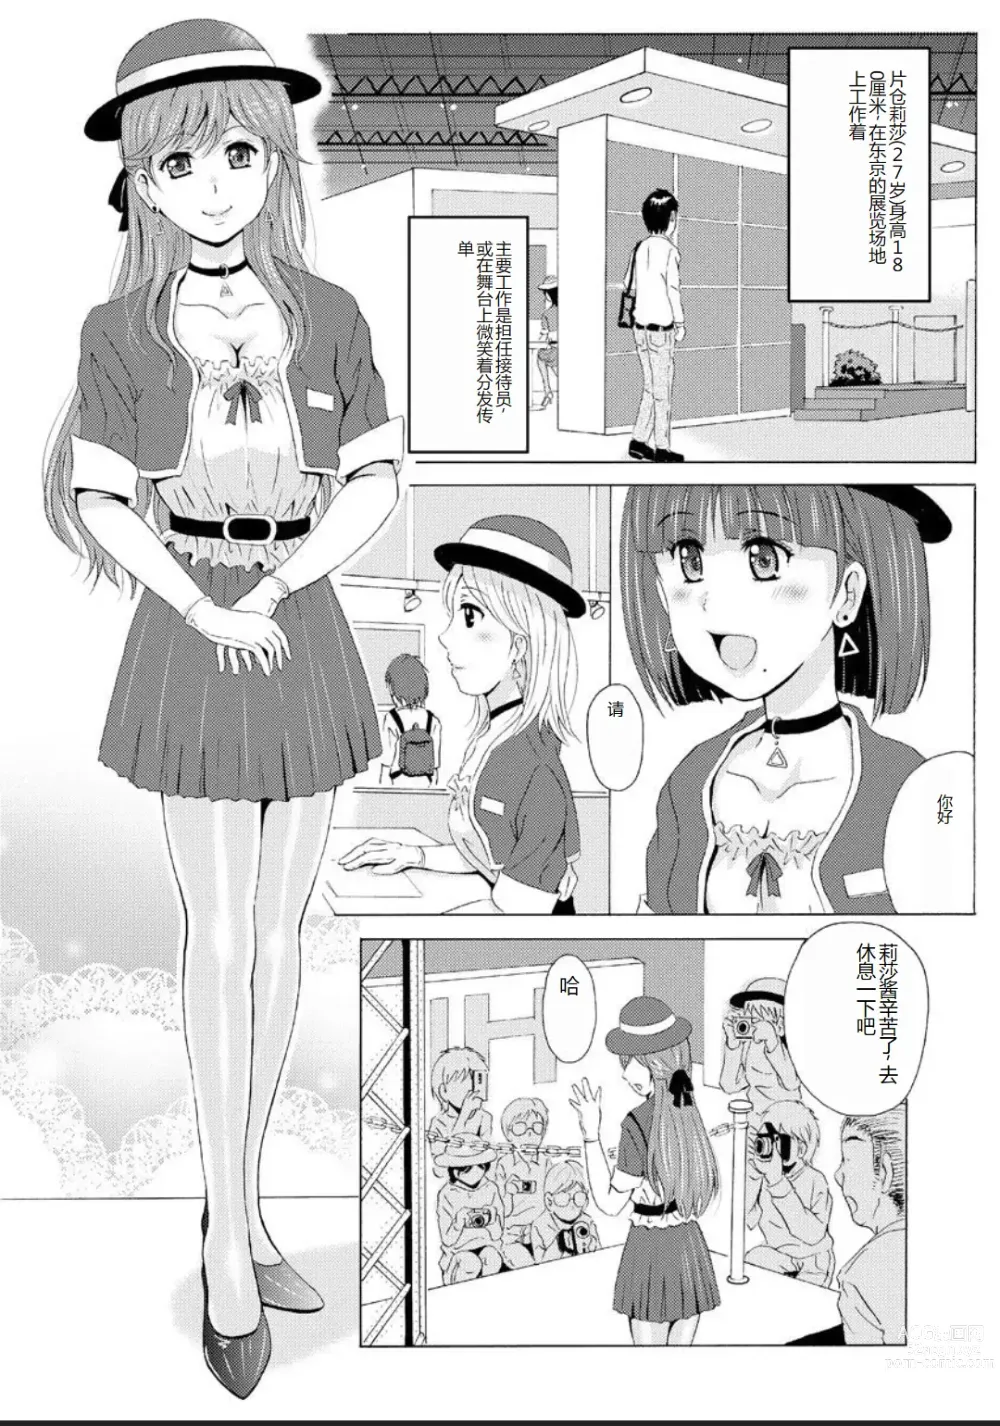 Page 3 of manga Seihuku Bikyaku 5 ～Ibento Konpanion Risa no Mu Re Ta Tizyo Pansuto